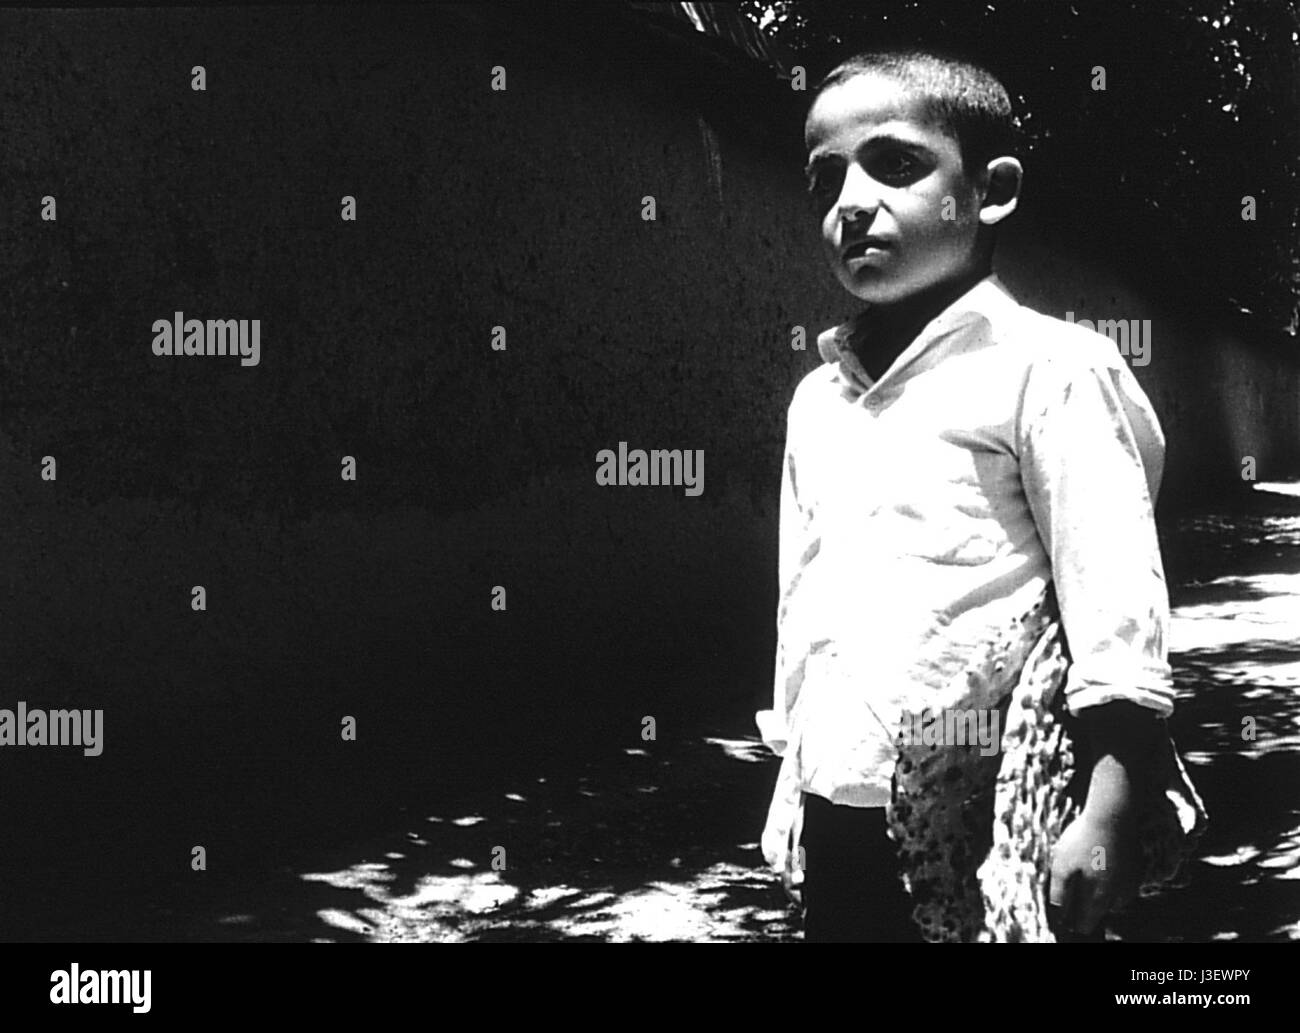 Nan va Koutcheh il pane e il Vicolo Anno : 1970 Iran Direttore : Abbas Kiarostami corto Foto Stock